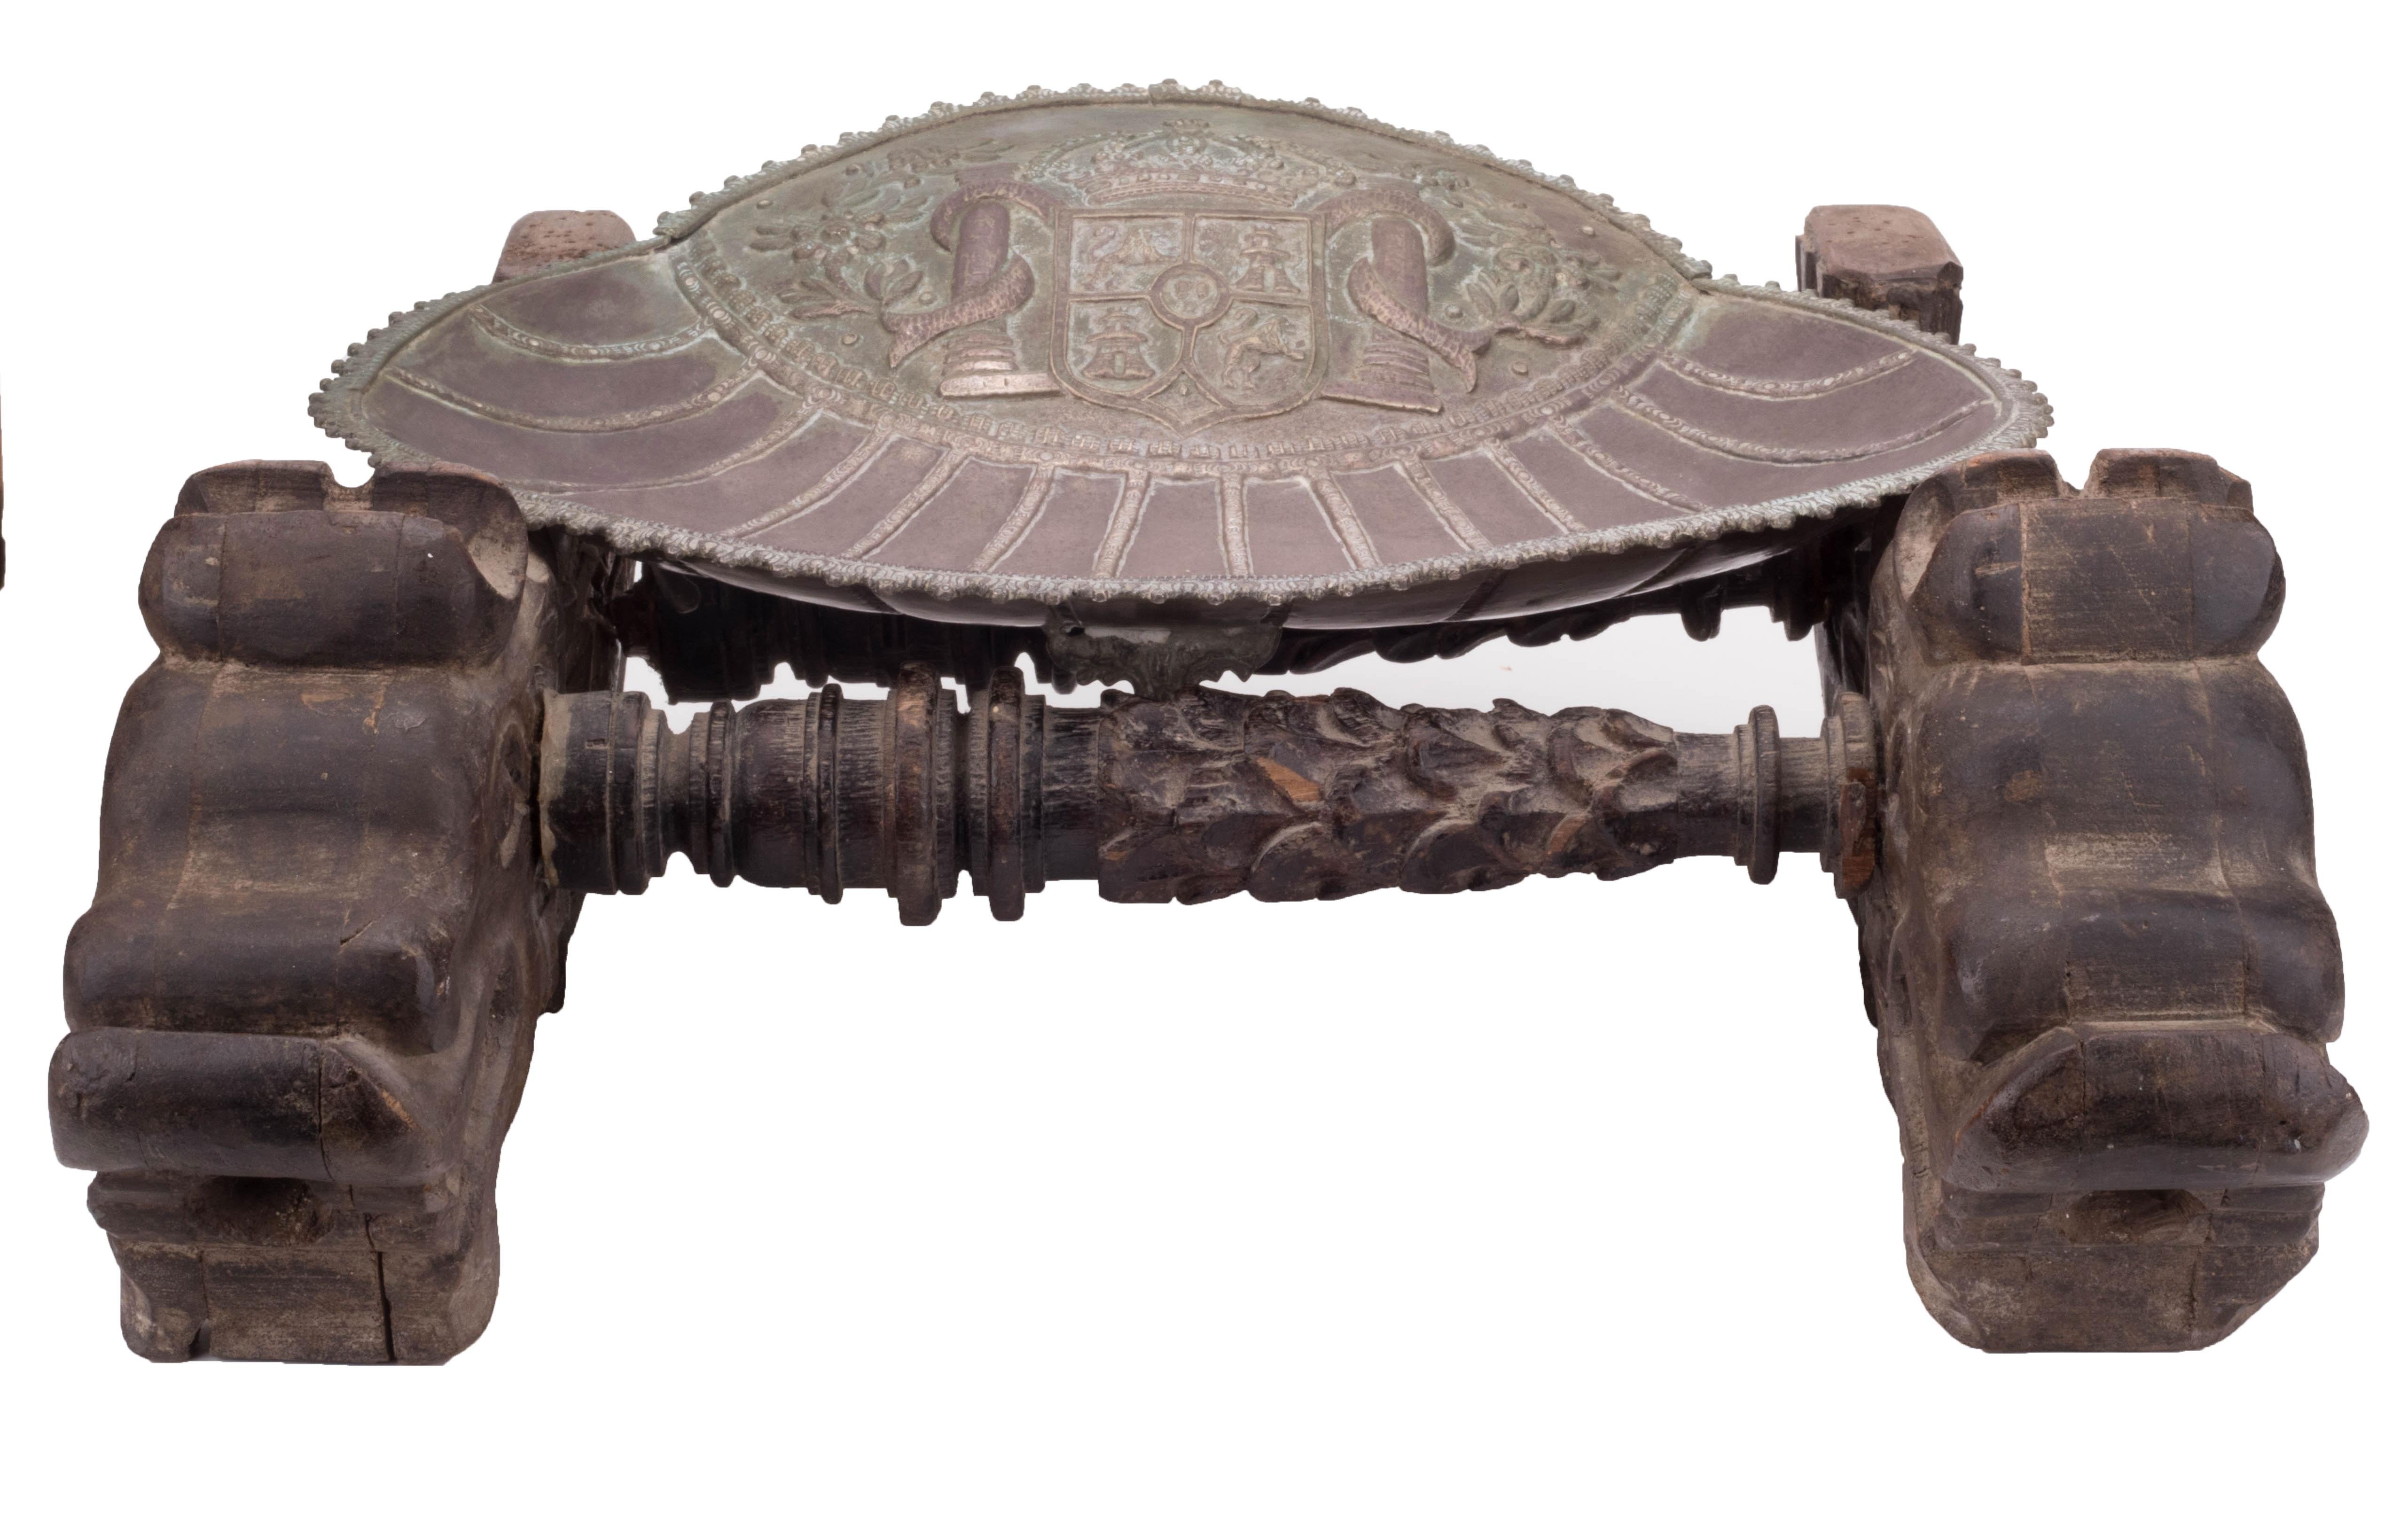 Silberne Muschel mit dem Wappen von Kastilien und León auf einem handgeschnitzten Holzträger. 

Größe der Muschel: 32 x 37cm
Silber nach Gewicht: 935 g.